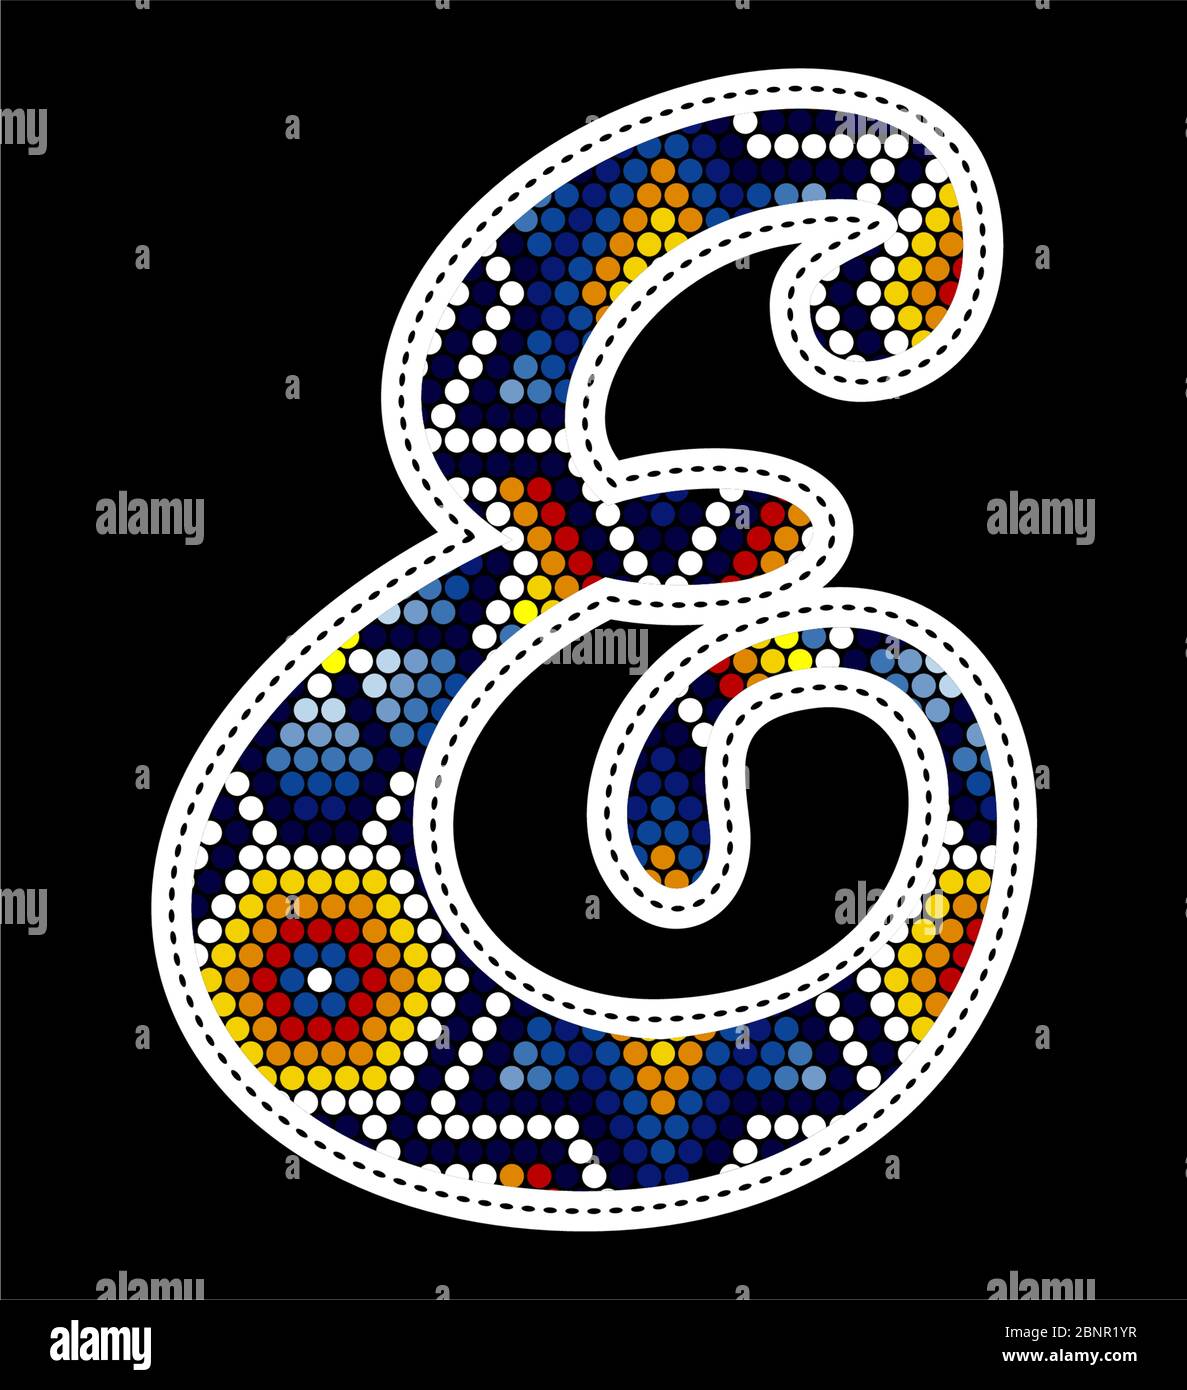 Lettre E majuscule initiale avec points colorés. Design abstrait inspiré du style artisanal mexicain à perles de huichol. Isolé sur fond noir Illustration de Vecteur